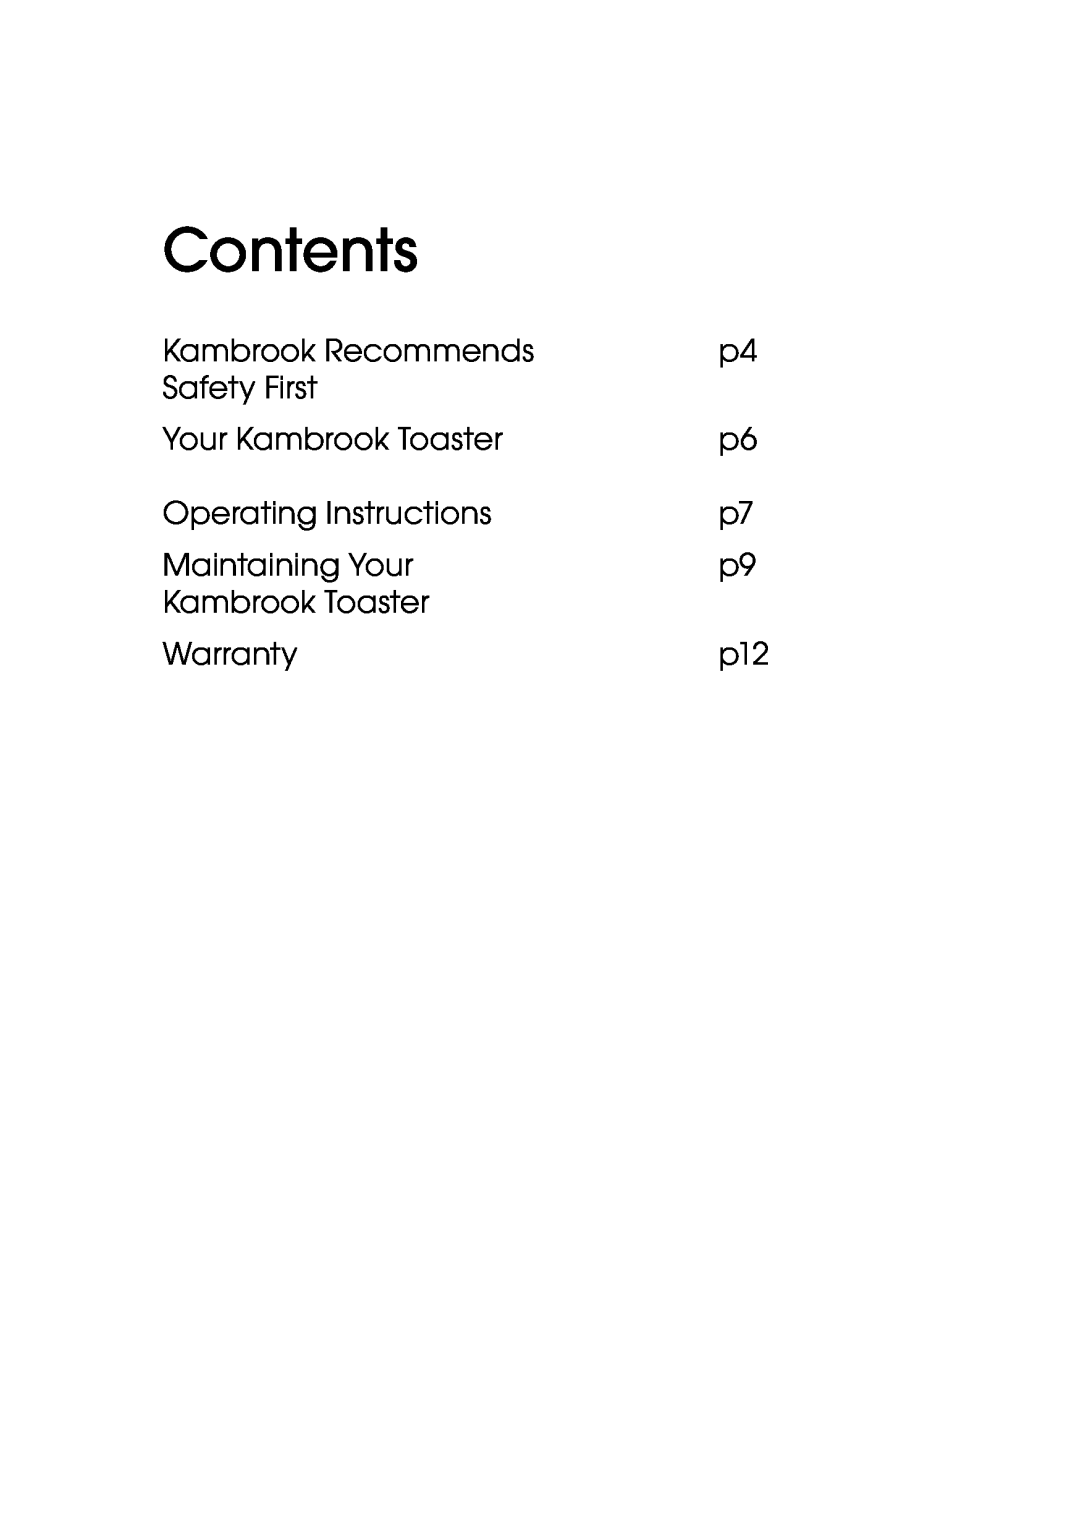 Kambrook KT60 manual Contents 